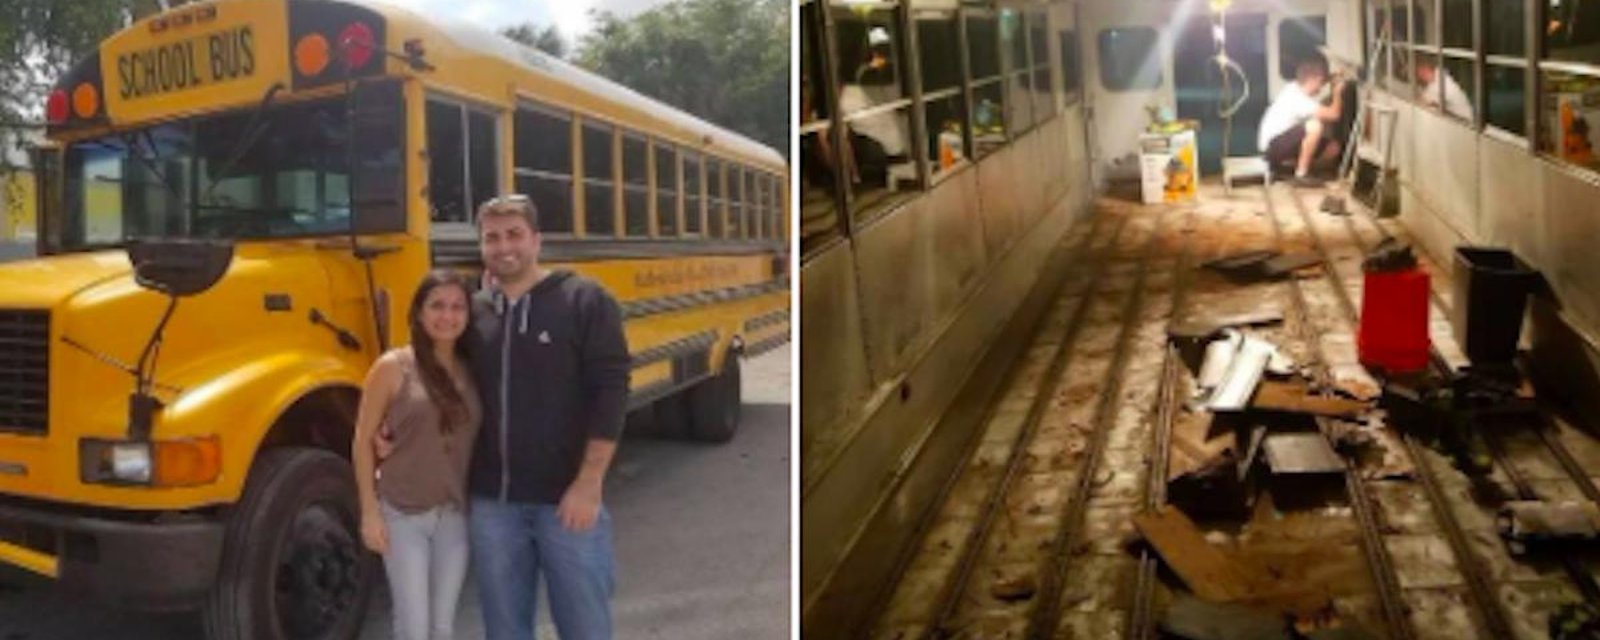 Ce couple a transformé ce vieux bus scolaire en superbe habitation nomade